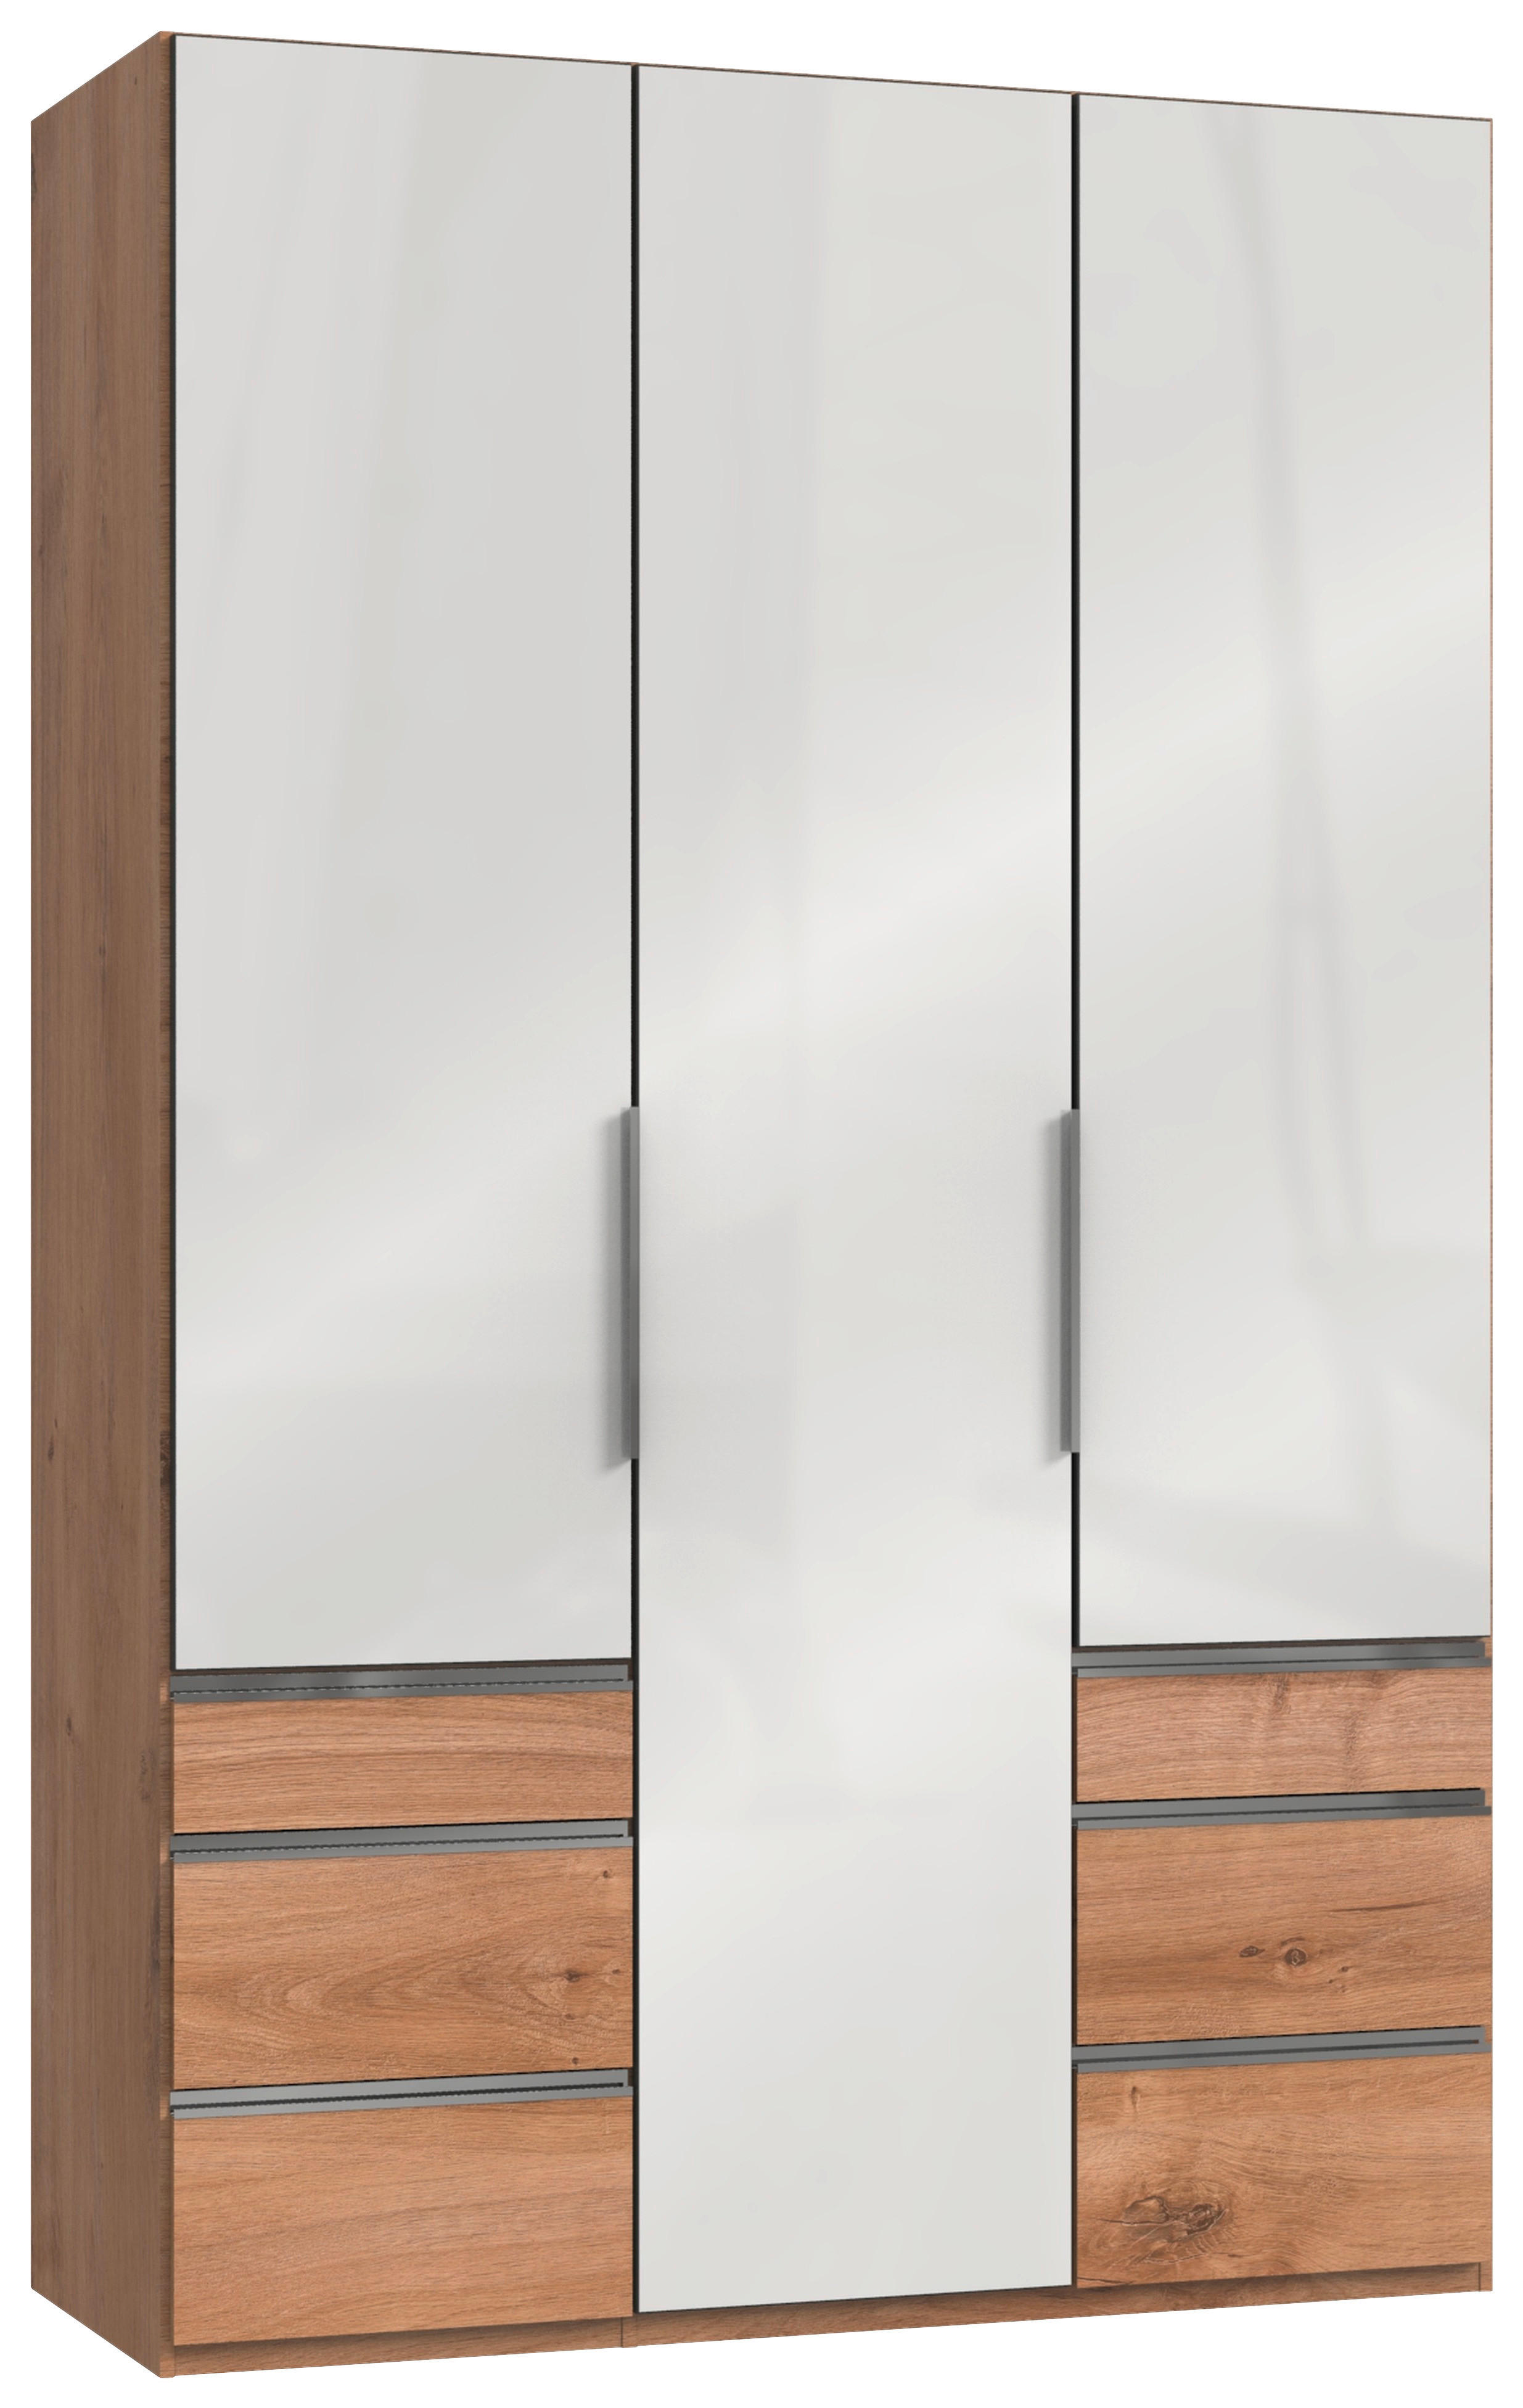 DREHTÜRENSCHRANK 3-türig Weiß, Eichefarben  - Chromfarben/Eichefarben, MODERN, Glas/Holzwerkstoff (150/236/58cm) - MID.YOU